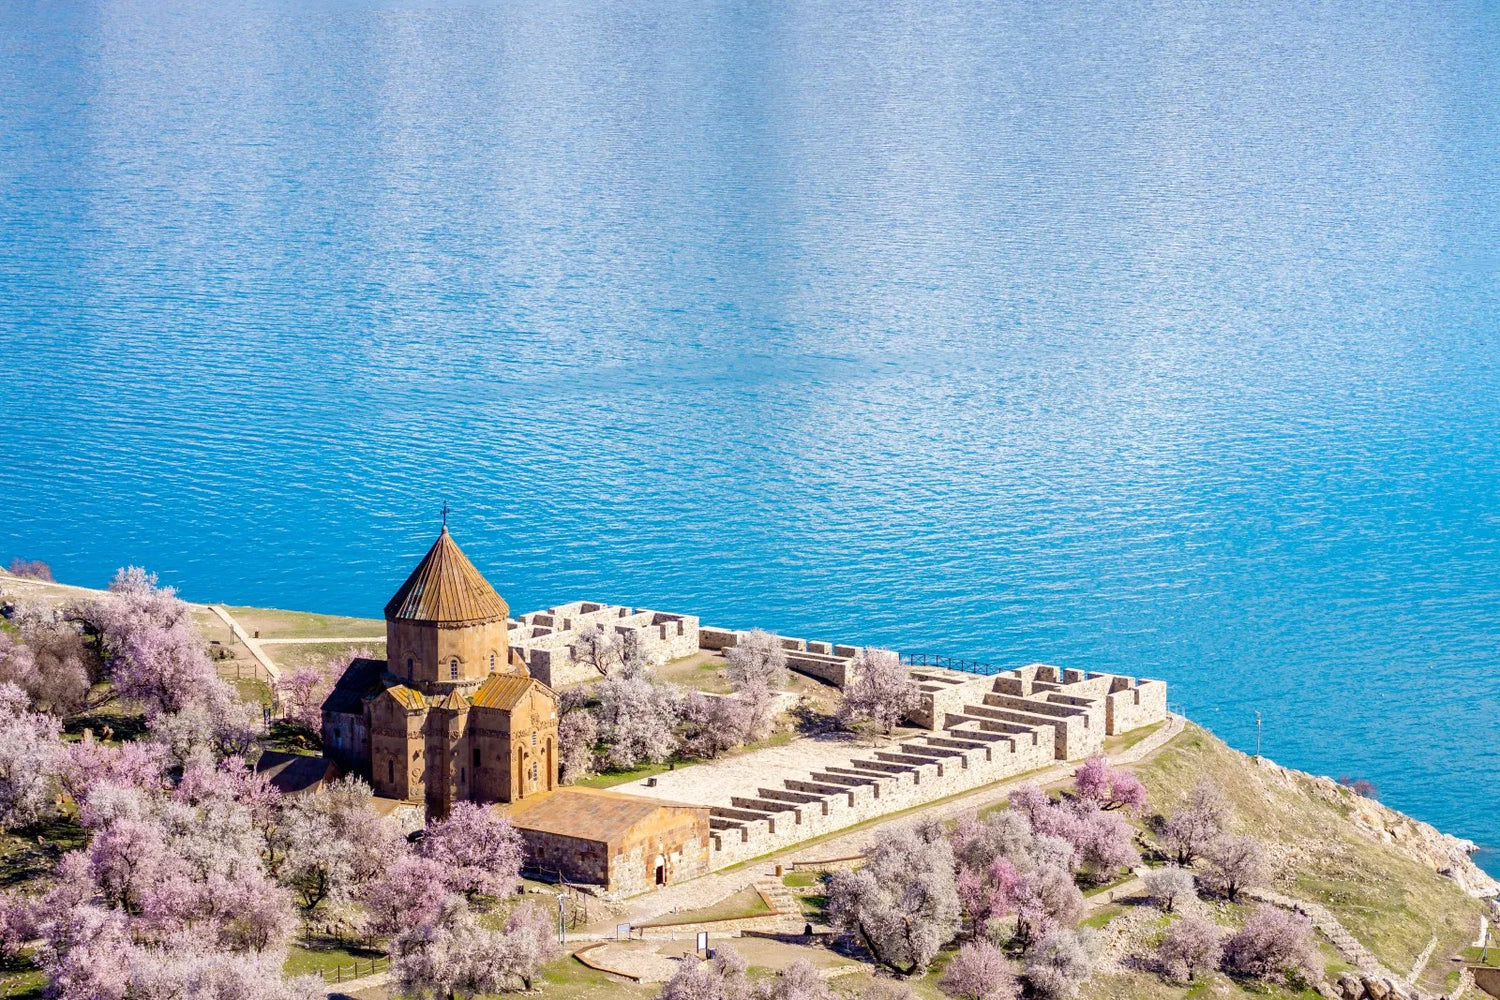 The Armenian Island of Akhtamar